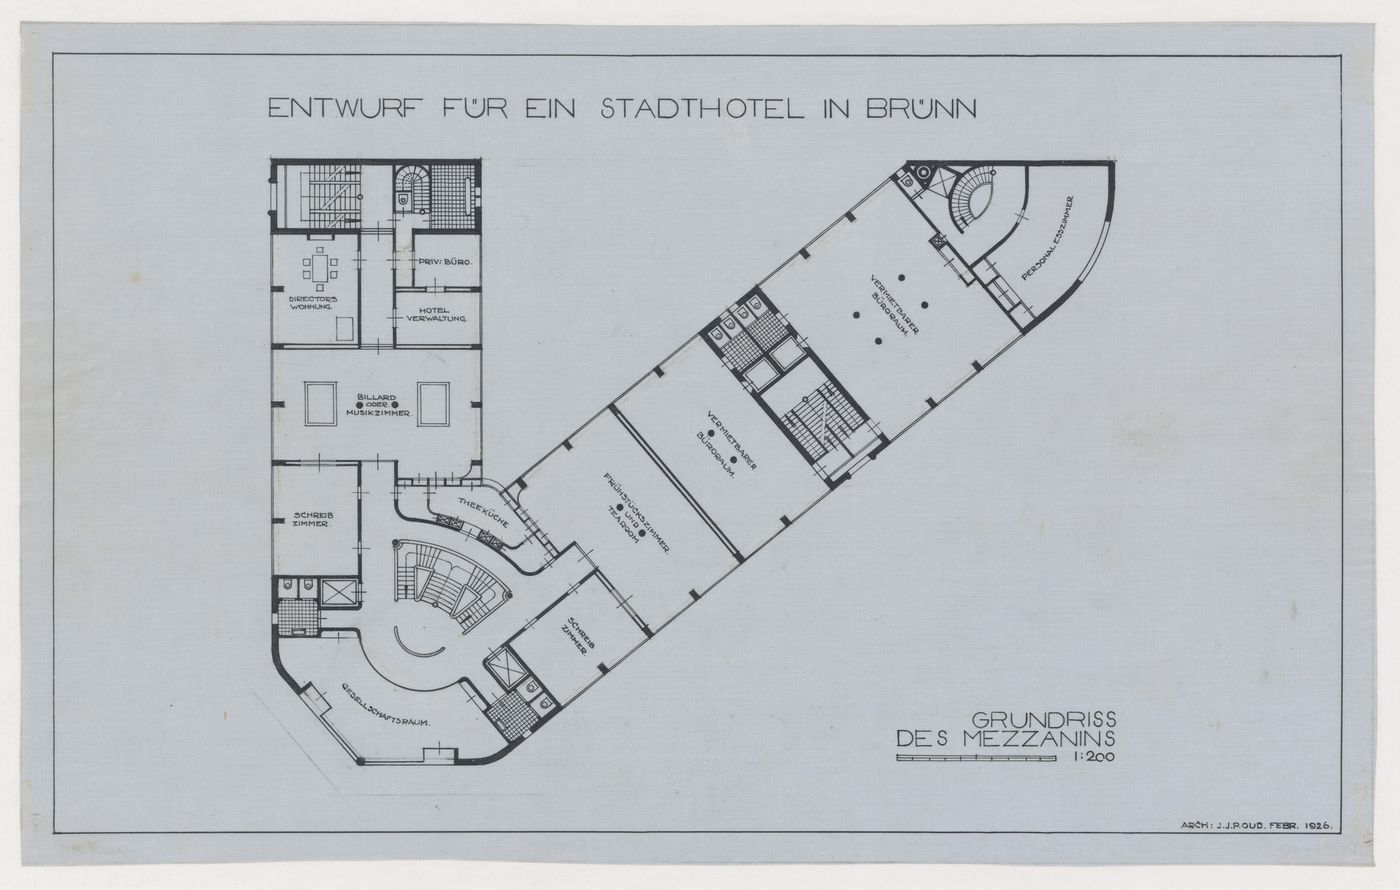 Mezzanine plan for Hotel Stiassni, Brno, Czechoslovakia (now Czech Republic)